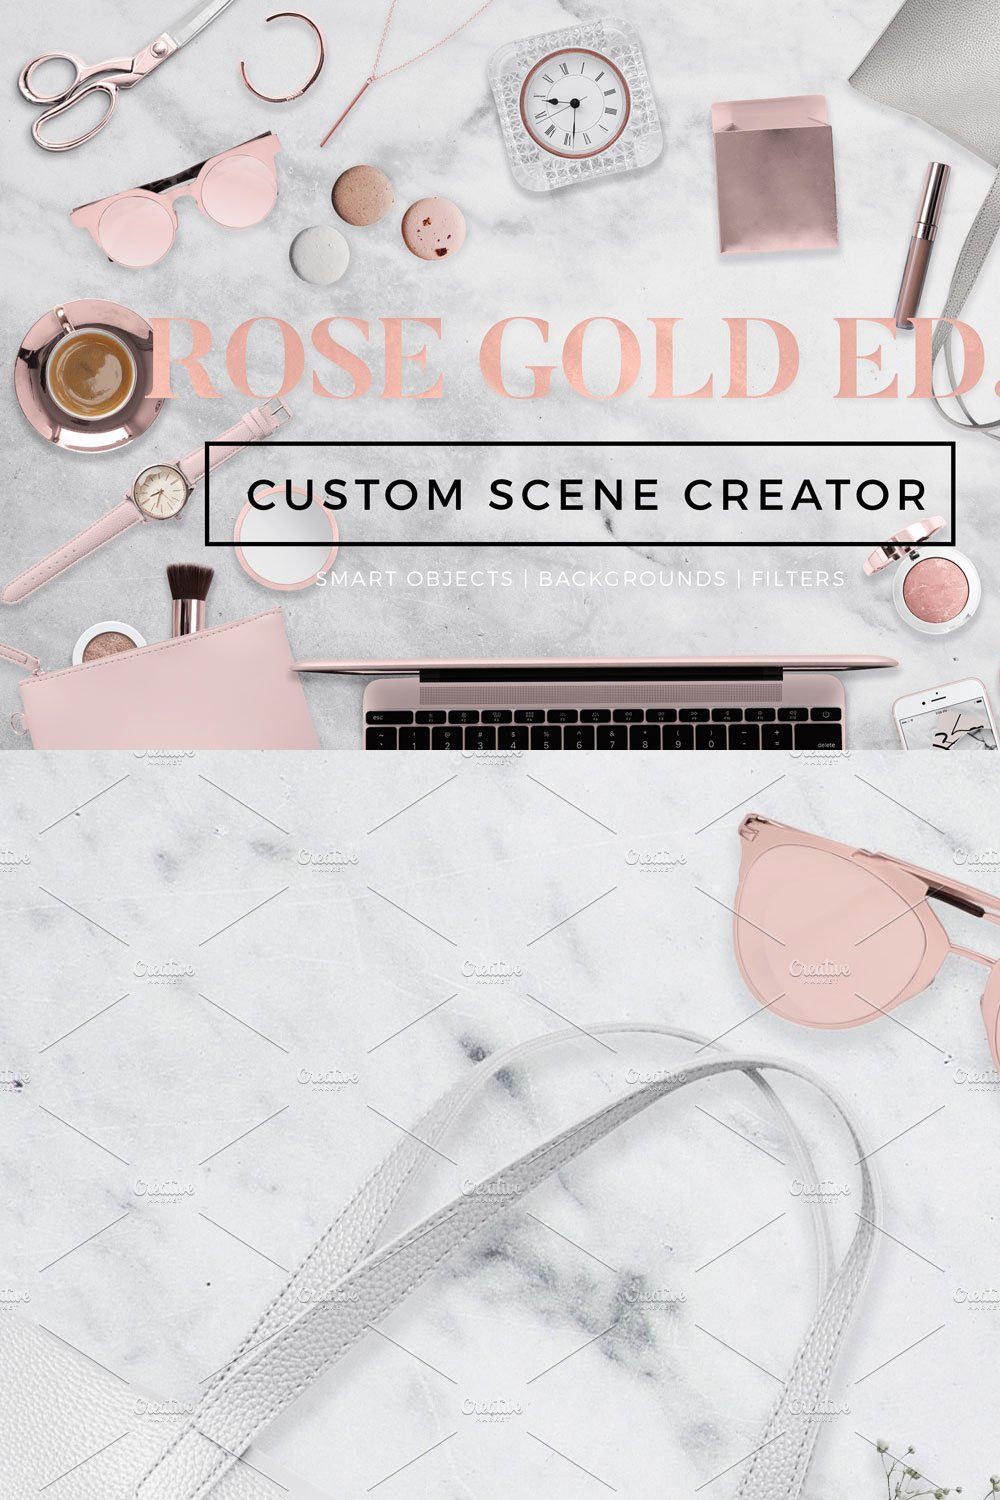 Custom Scene Creator-Rose Gold Ed. pinterest preview image.